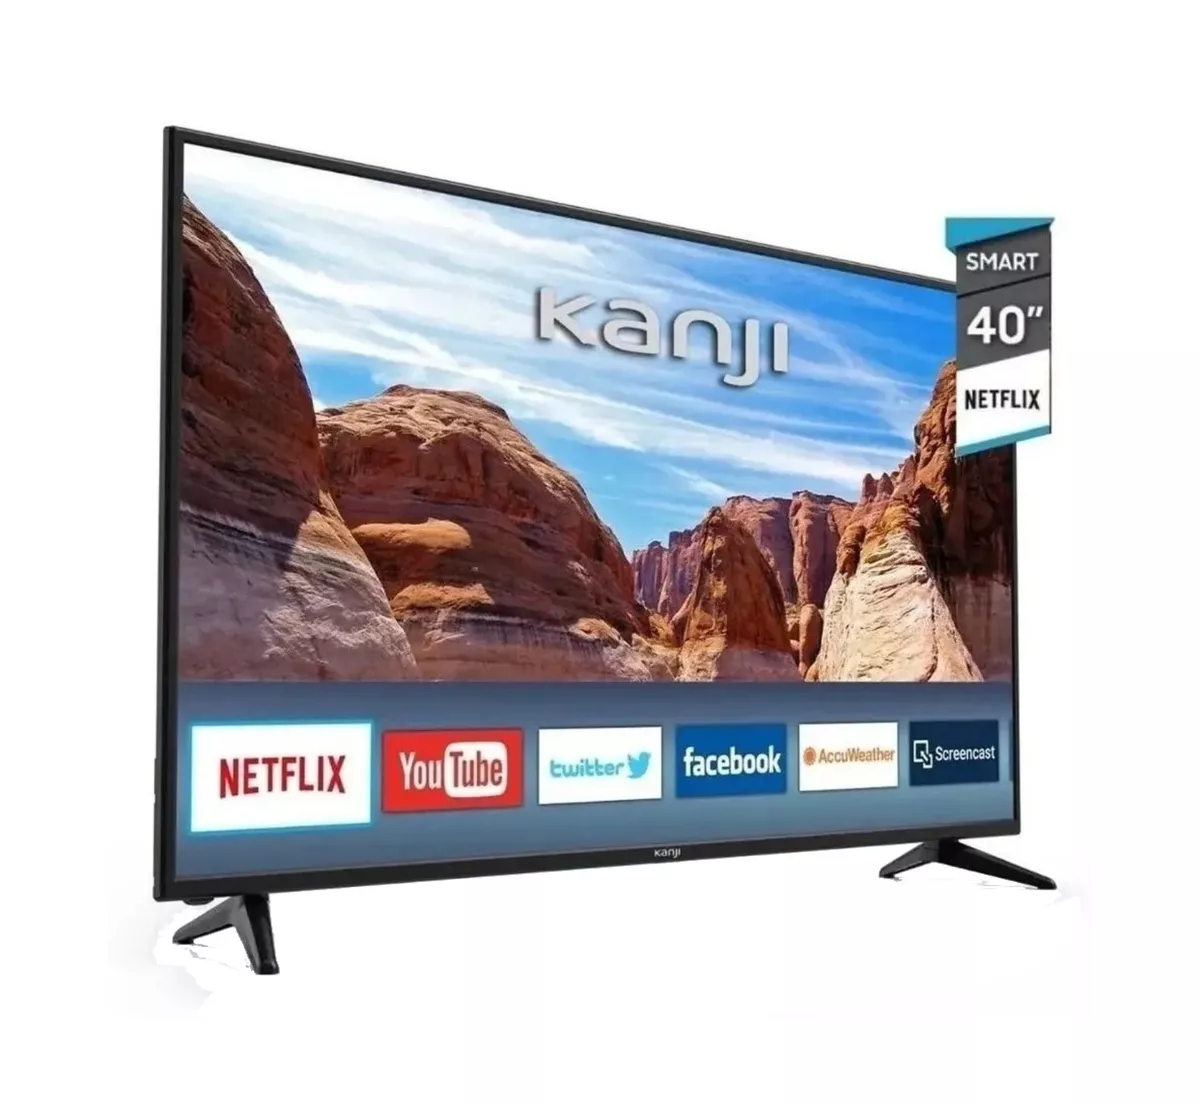 Smart Tv Kanji Kj-4xtl005 Led Android Tv Hd 40 220v